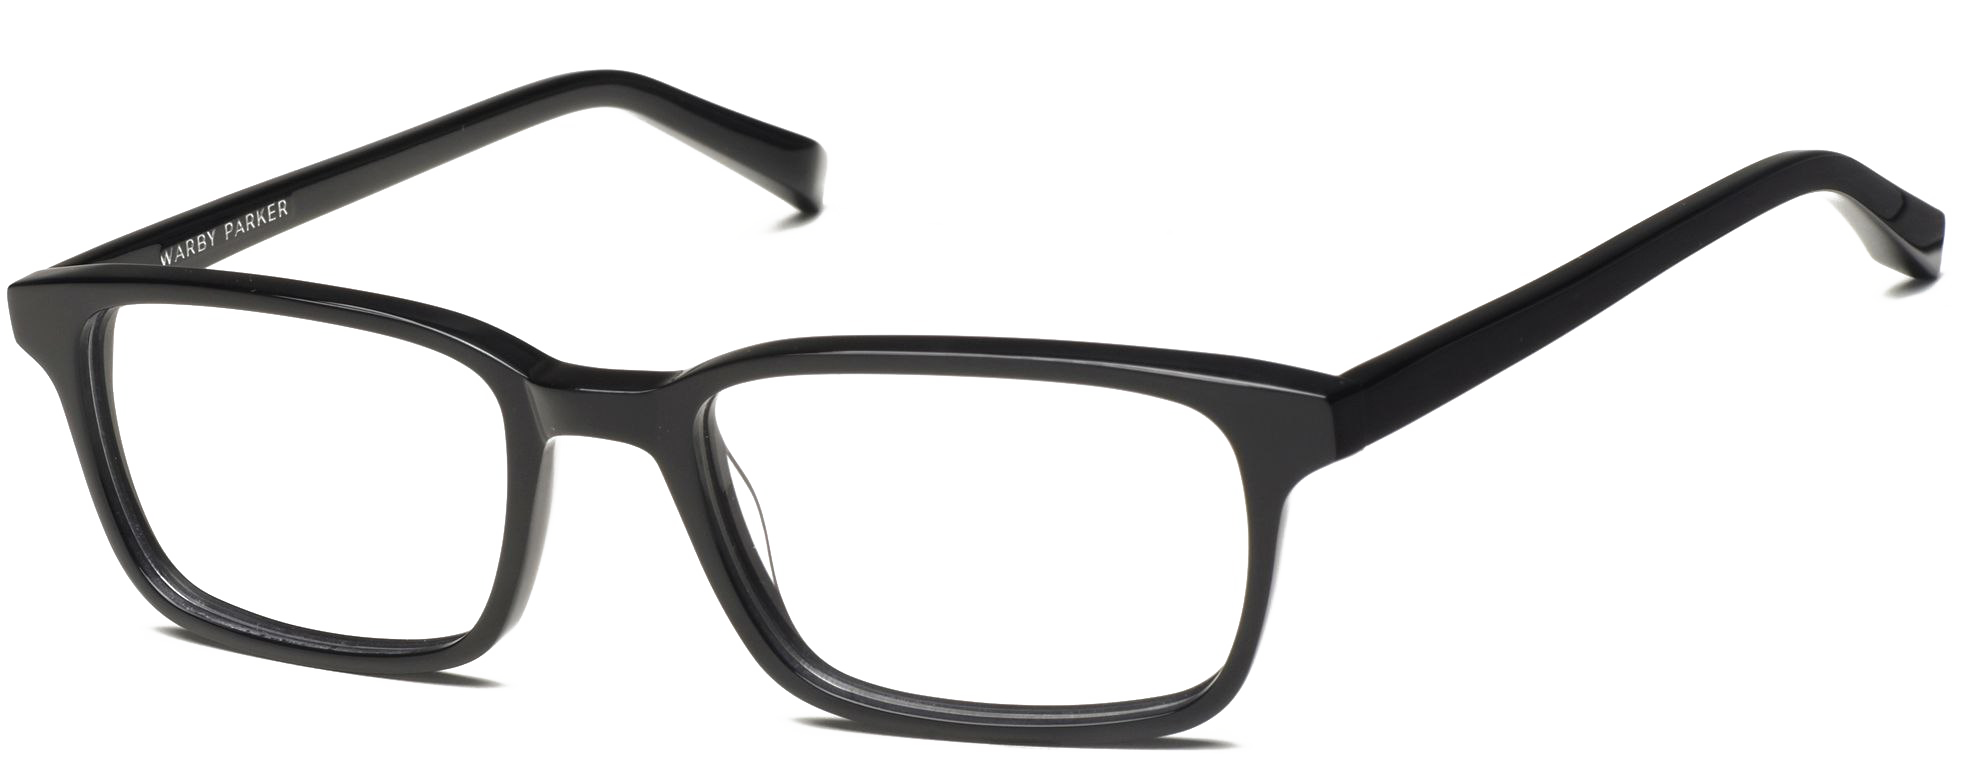 النظارات السوداء PNG صورة خلفية